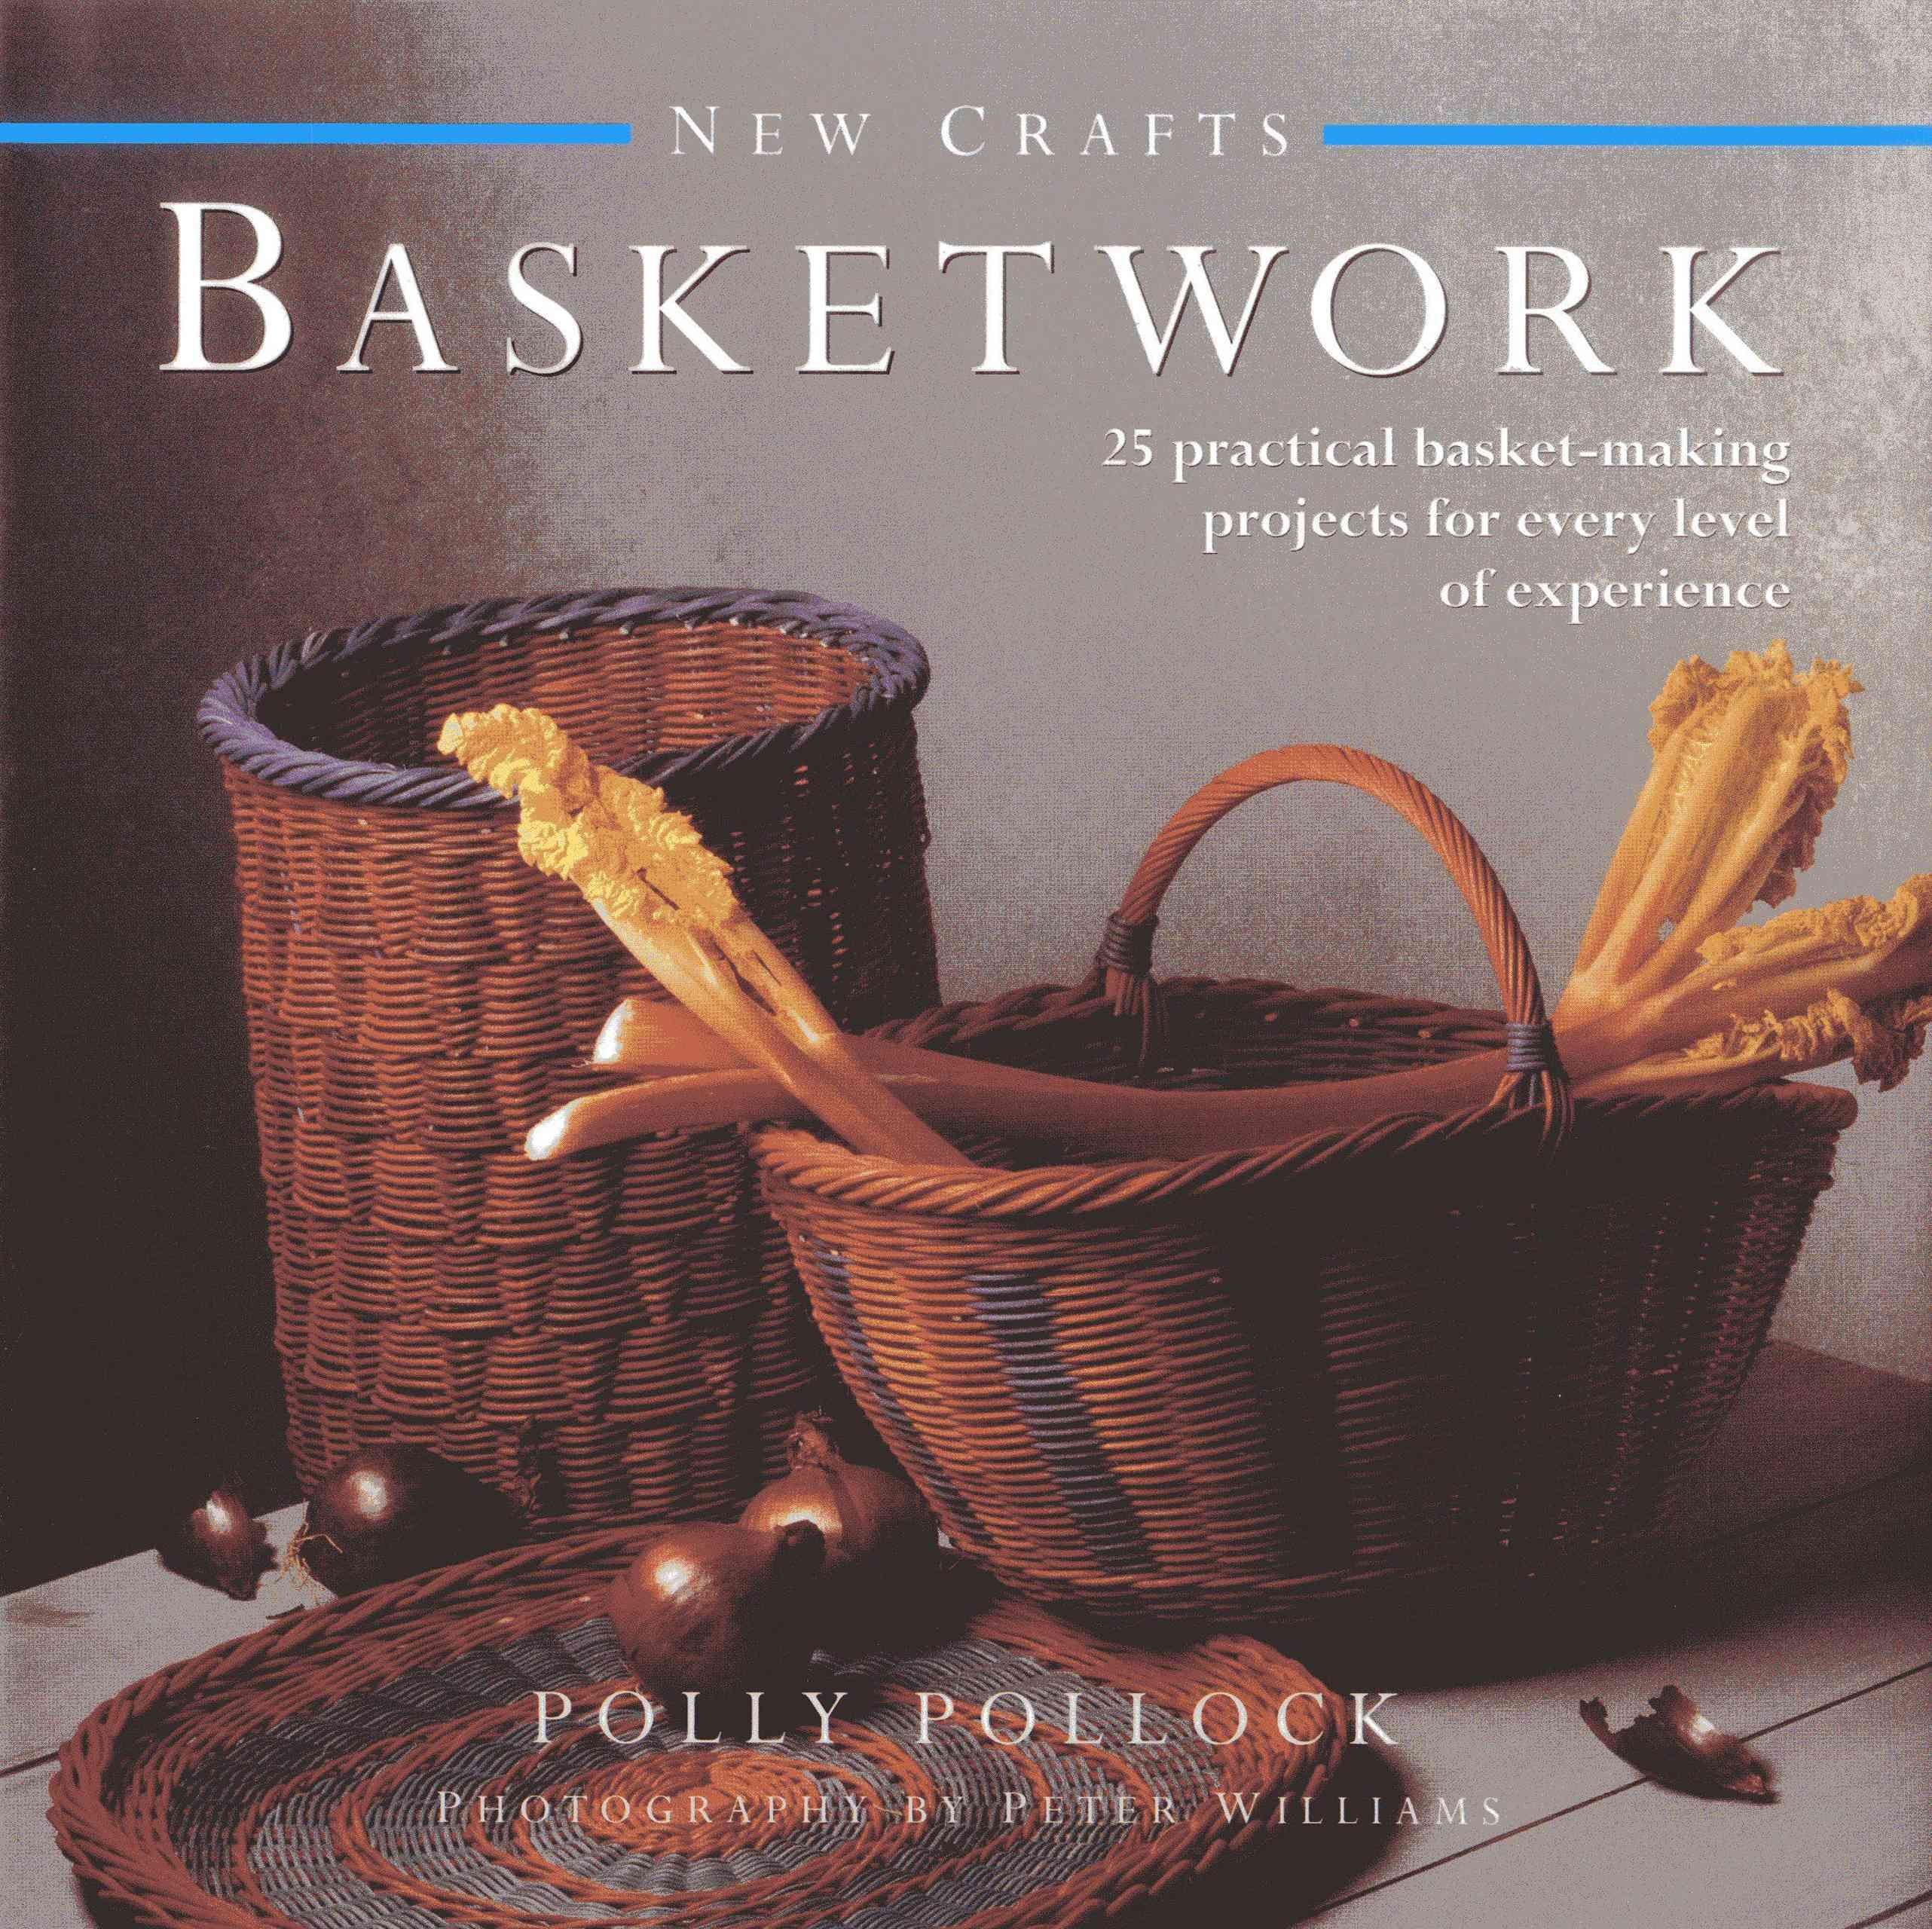 New Crafts: Basketwork